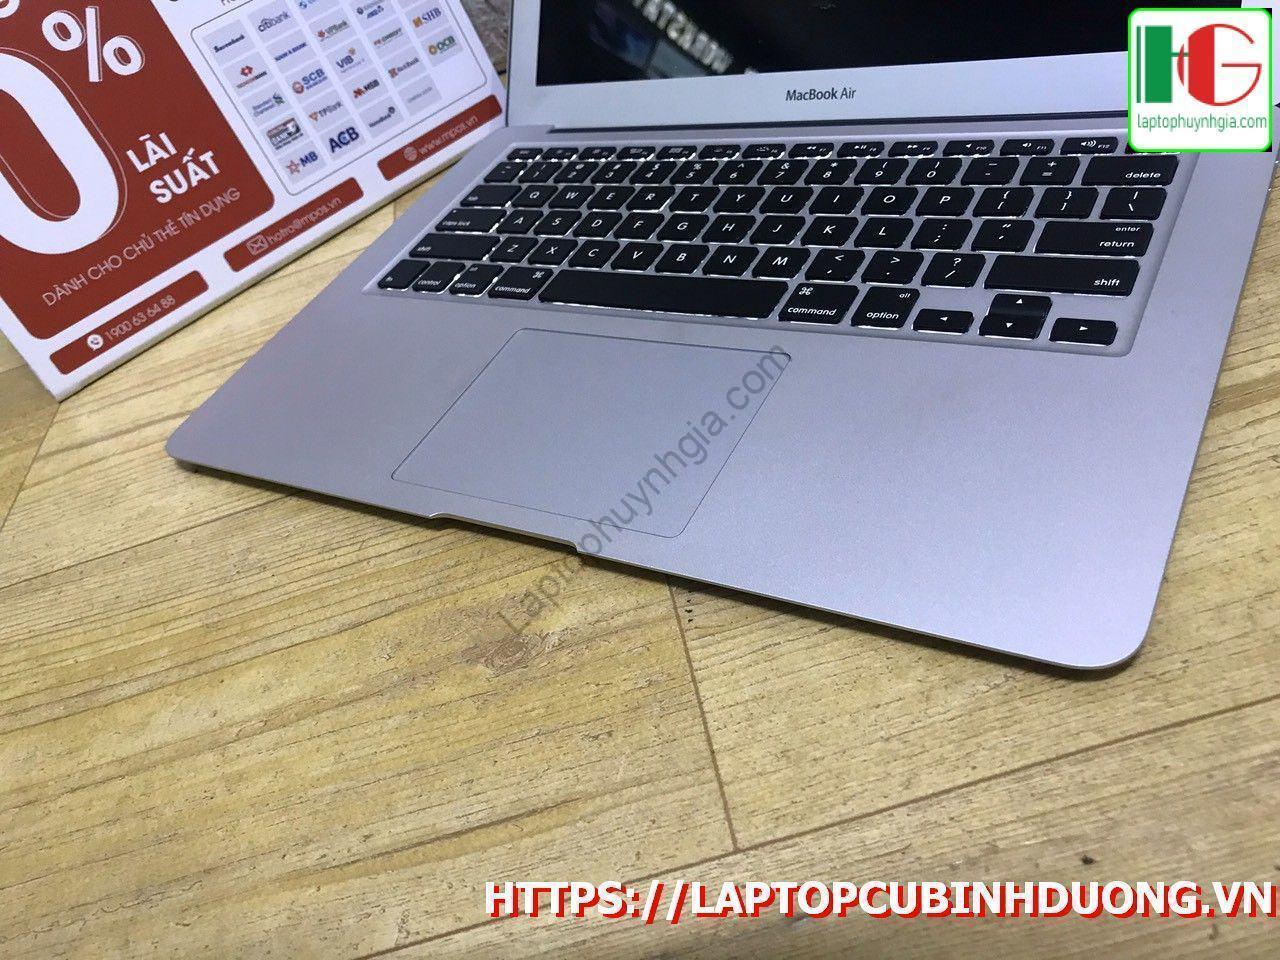 Macbook Air 2017 I5 8g Ssd 128g Lcd 13 Laptopcubinhduong.vn 5 [kích Thước Gốc] Result